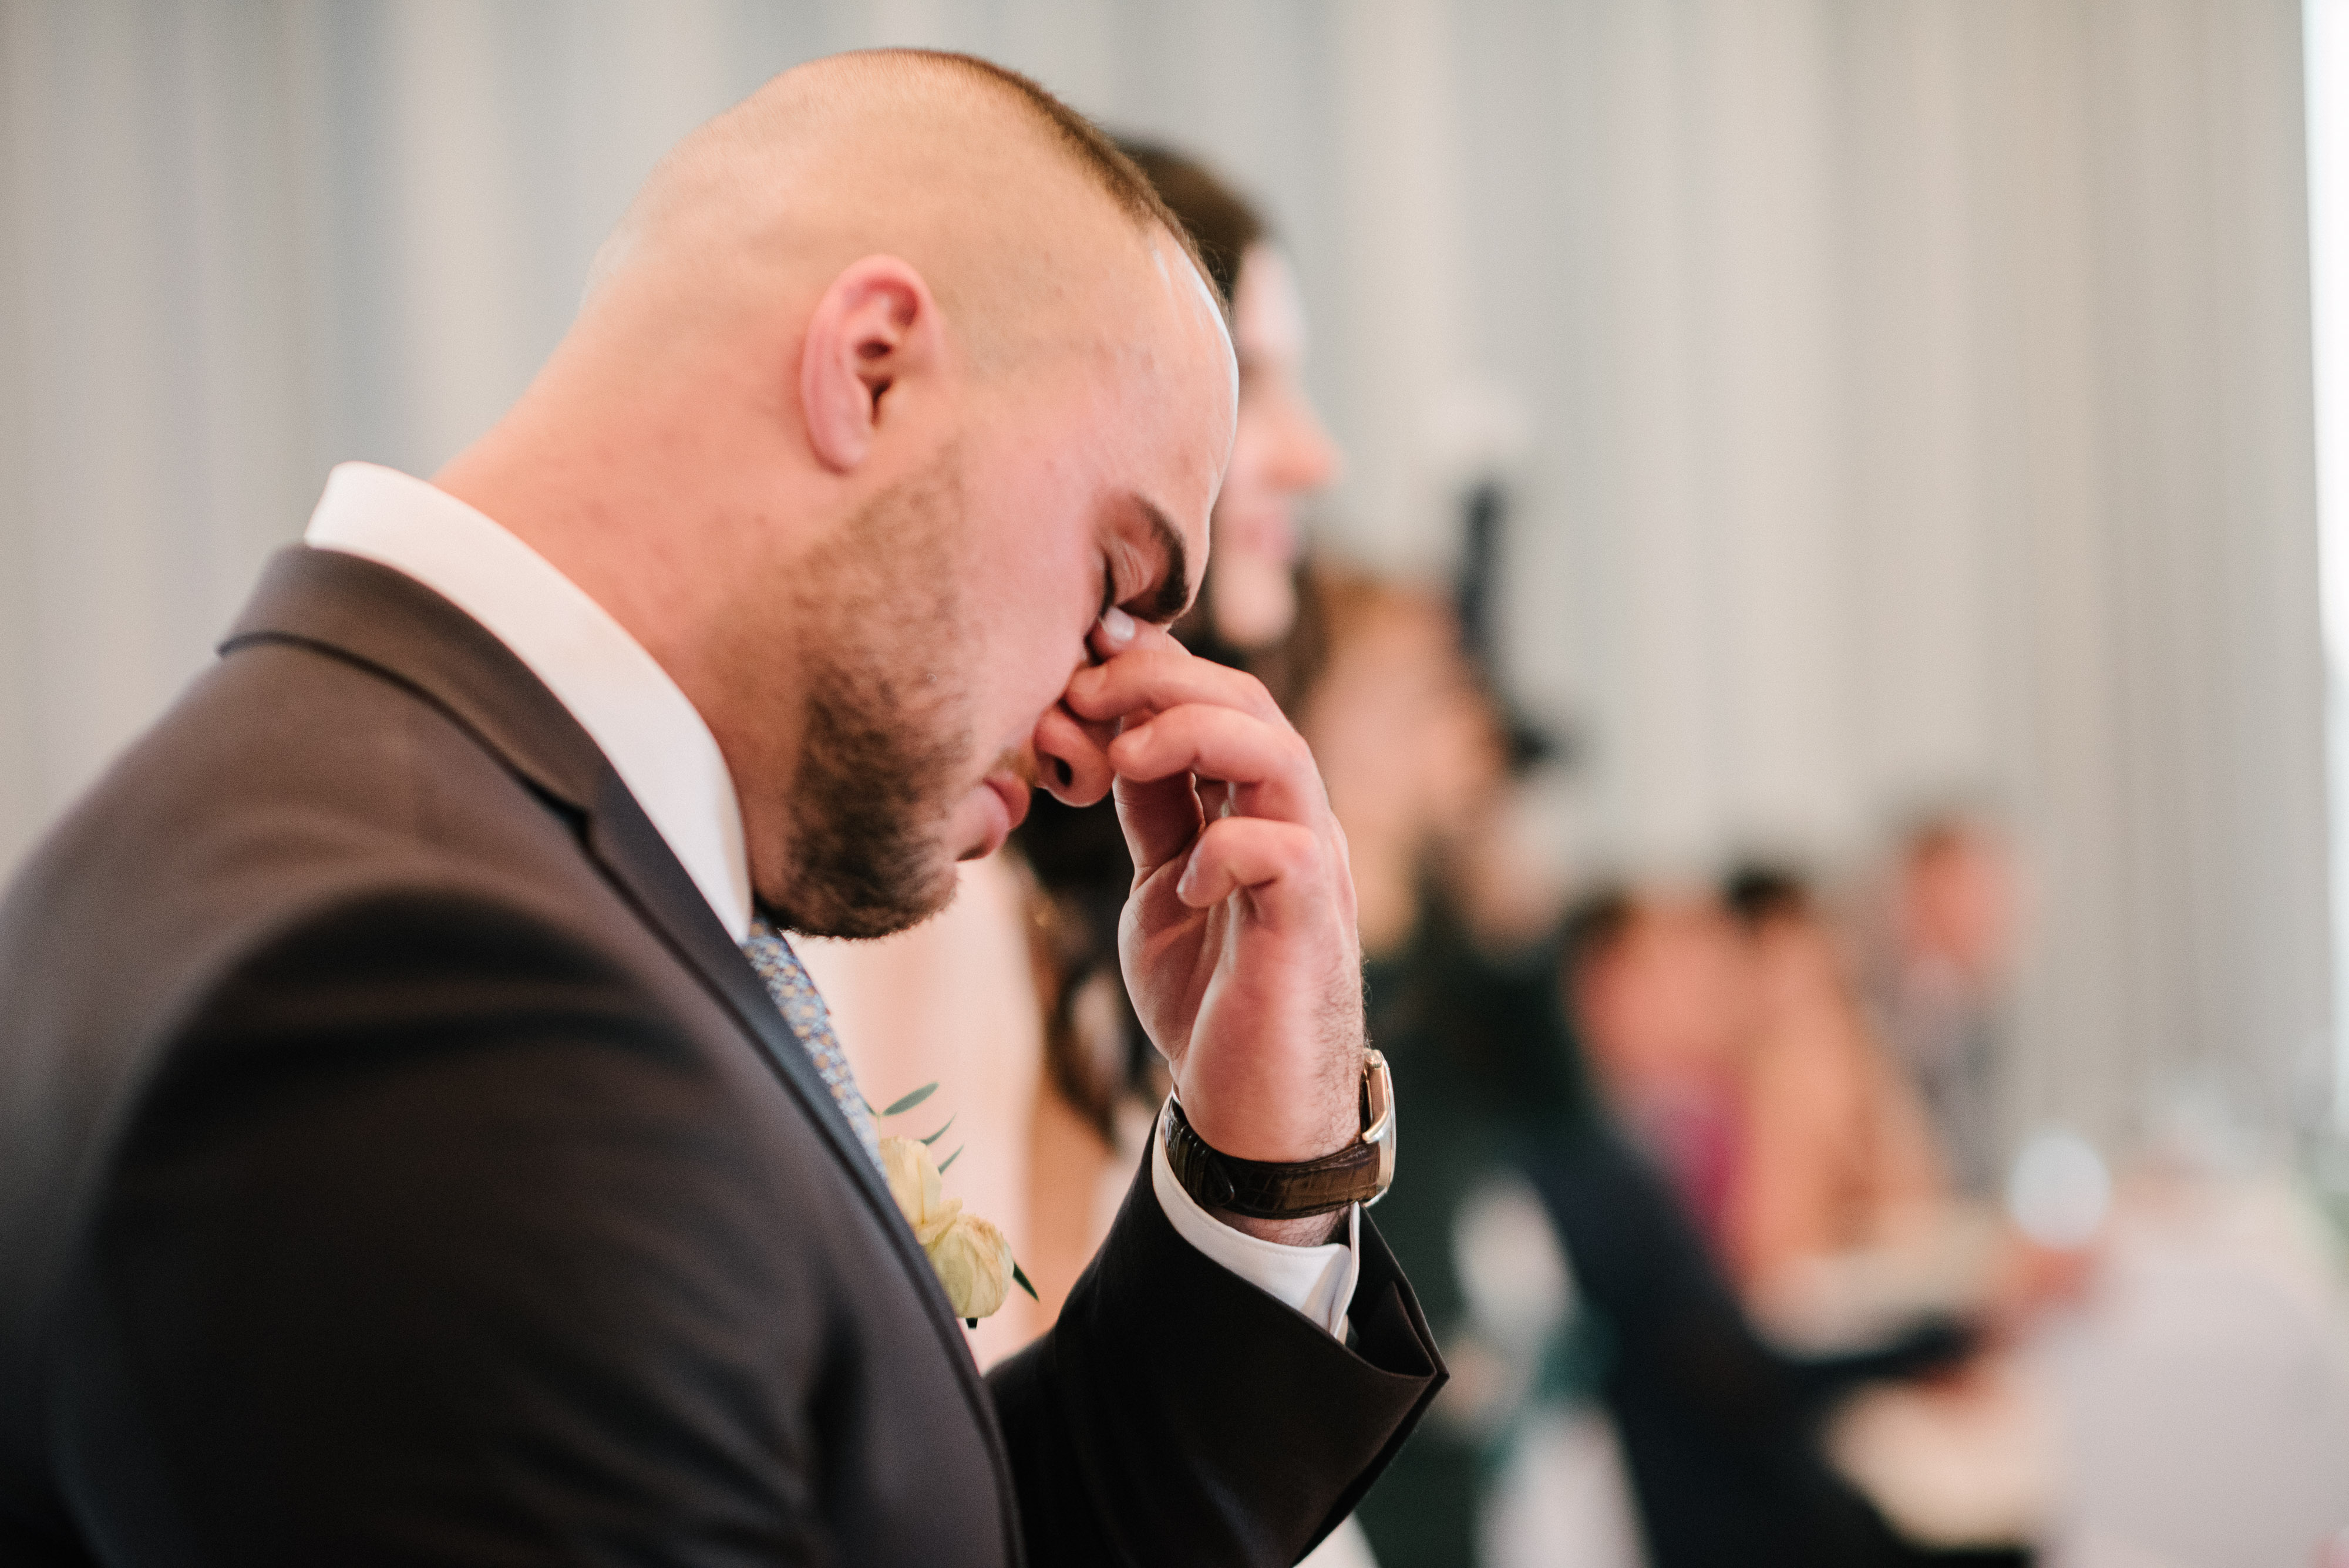 Un hombre llora en su boda | Fuente: Shutterstock